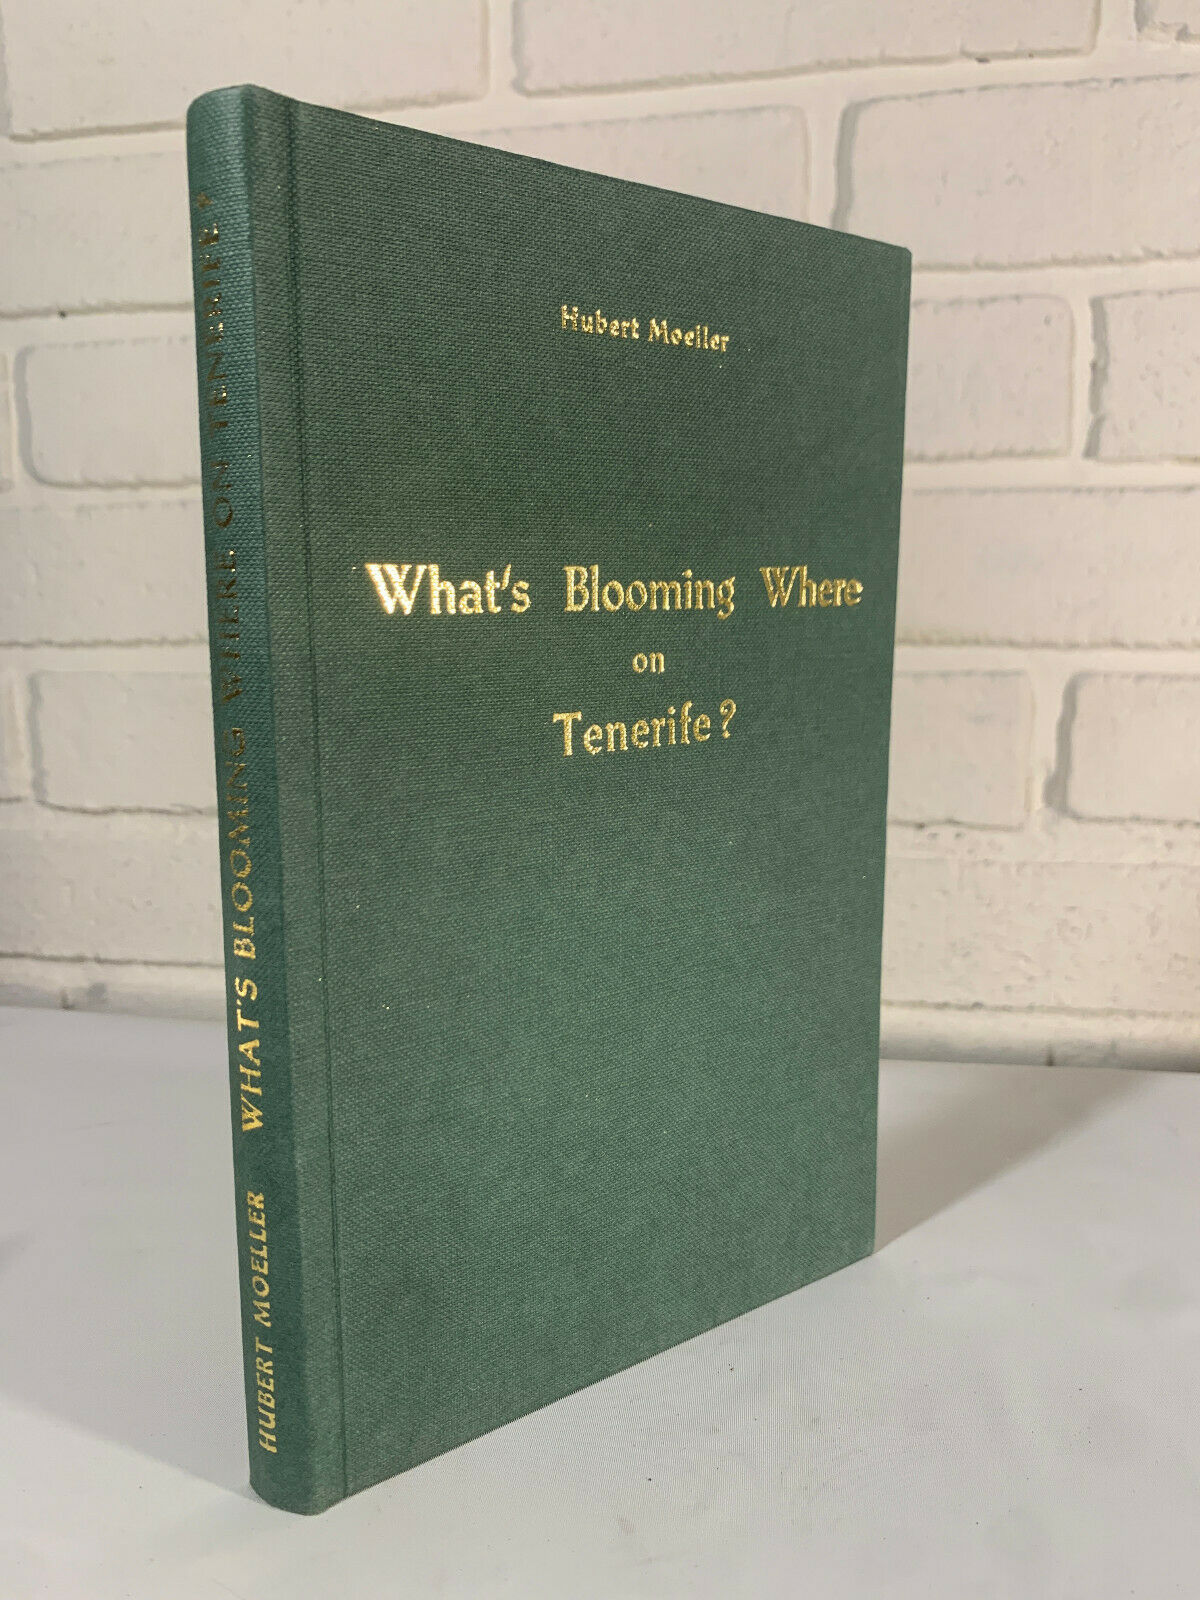 What's Blooming Where on Tenerife by Hubert Moeller 1968 (K3)